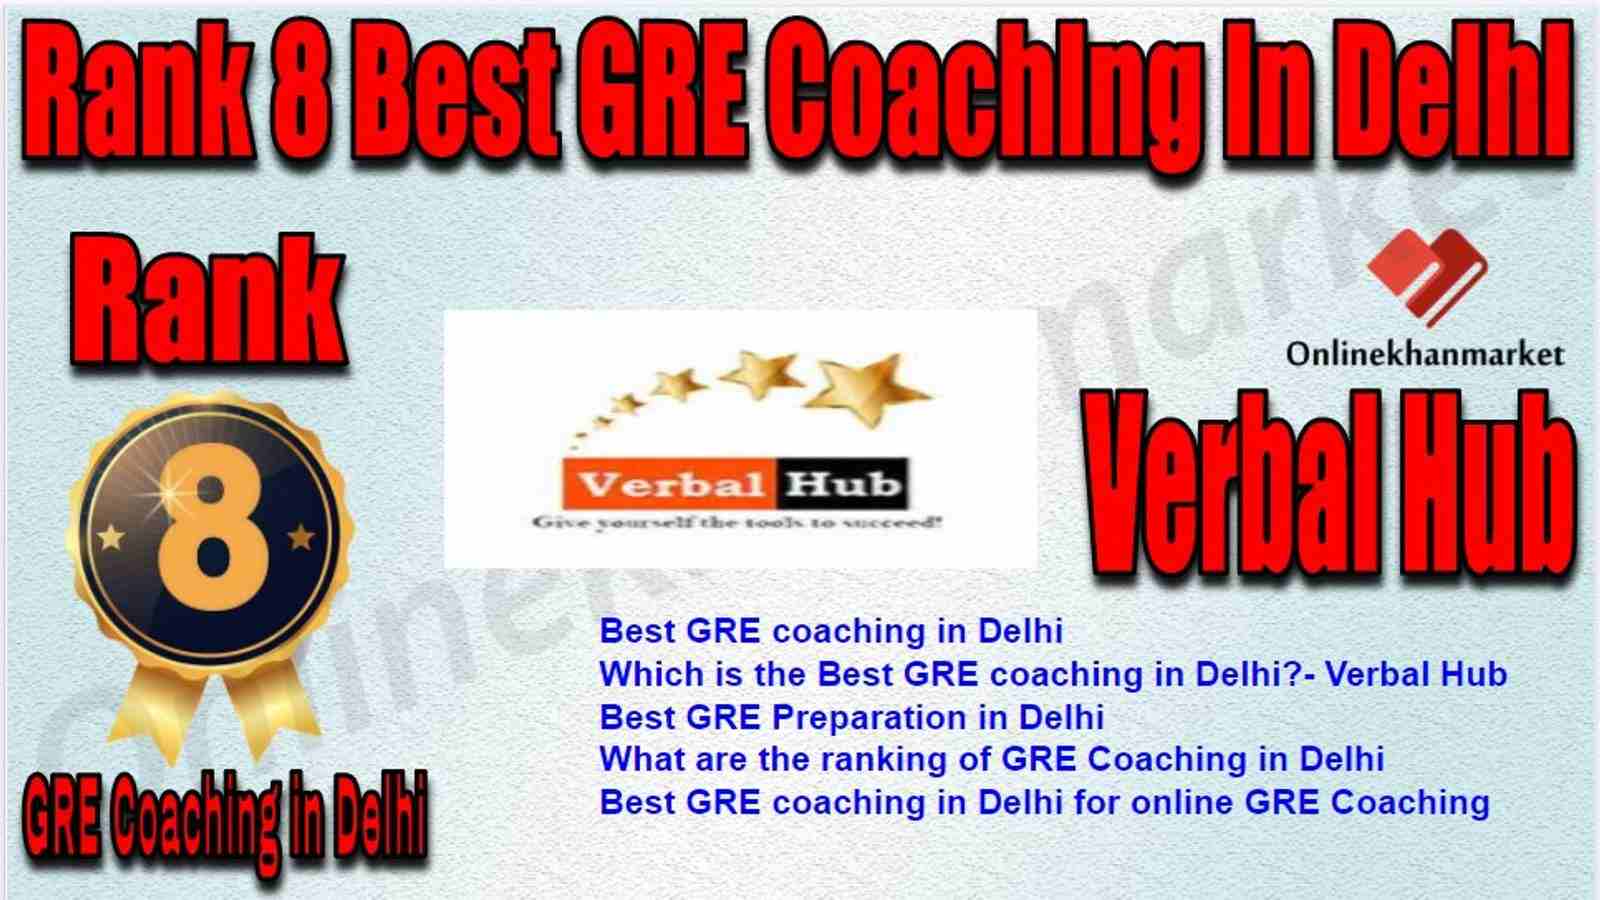 Rank 8 Best GRE Coaching in Delhi